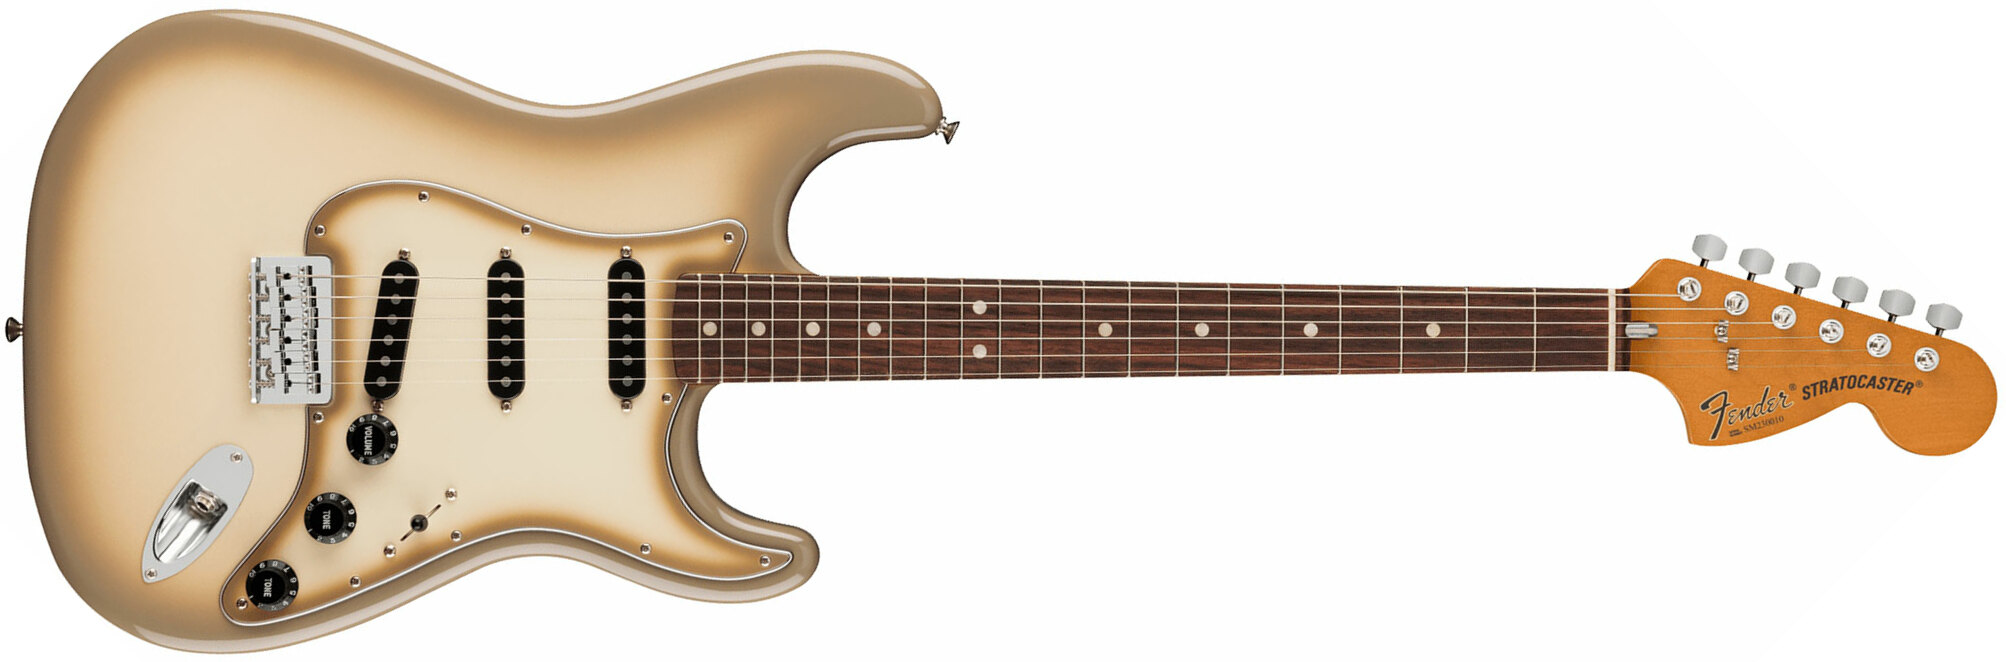 Fender Strat Antigua 70th Anniversary Vintera 2 Mex 3s Ht Rw - Antigua - E-Gitarre in Str-Form - Main picture